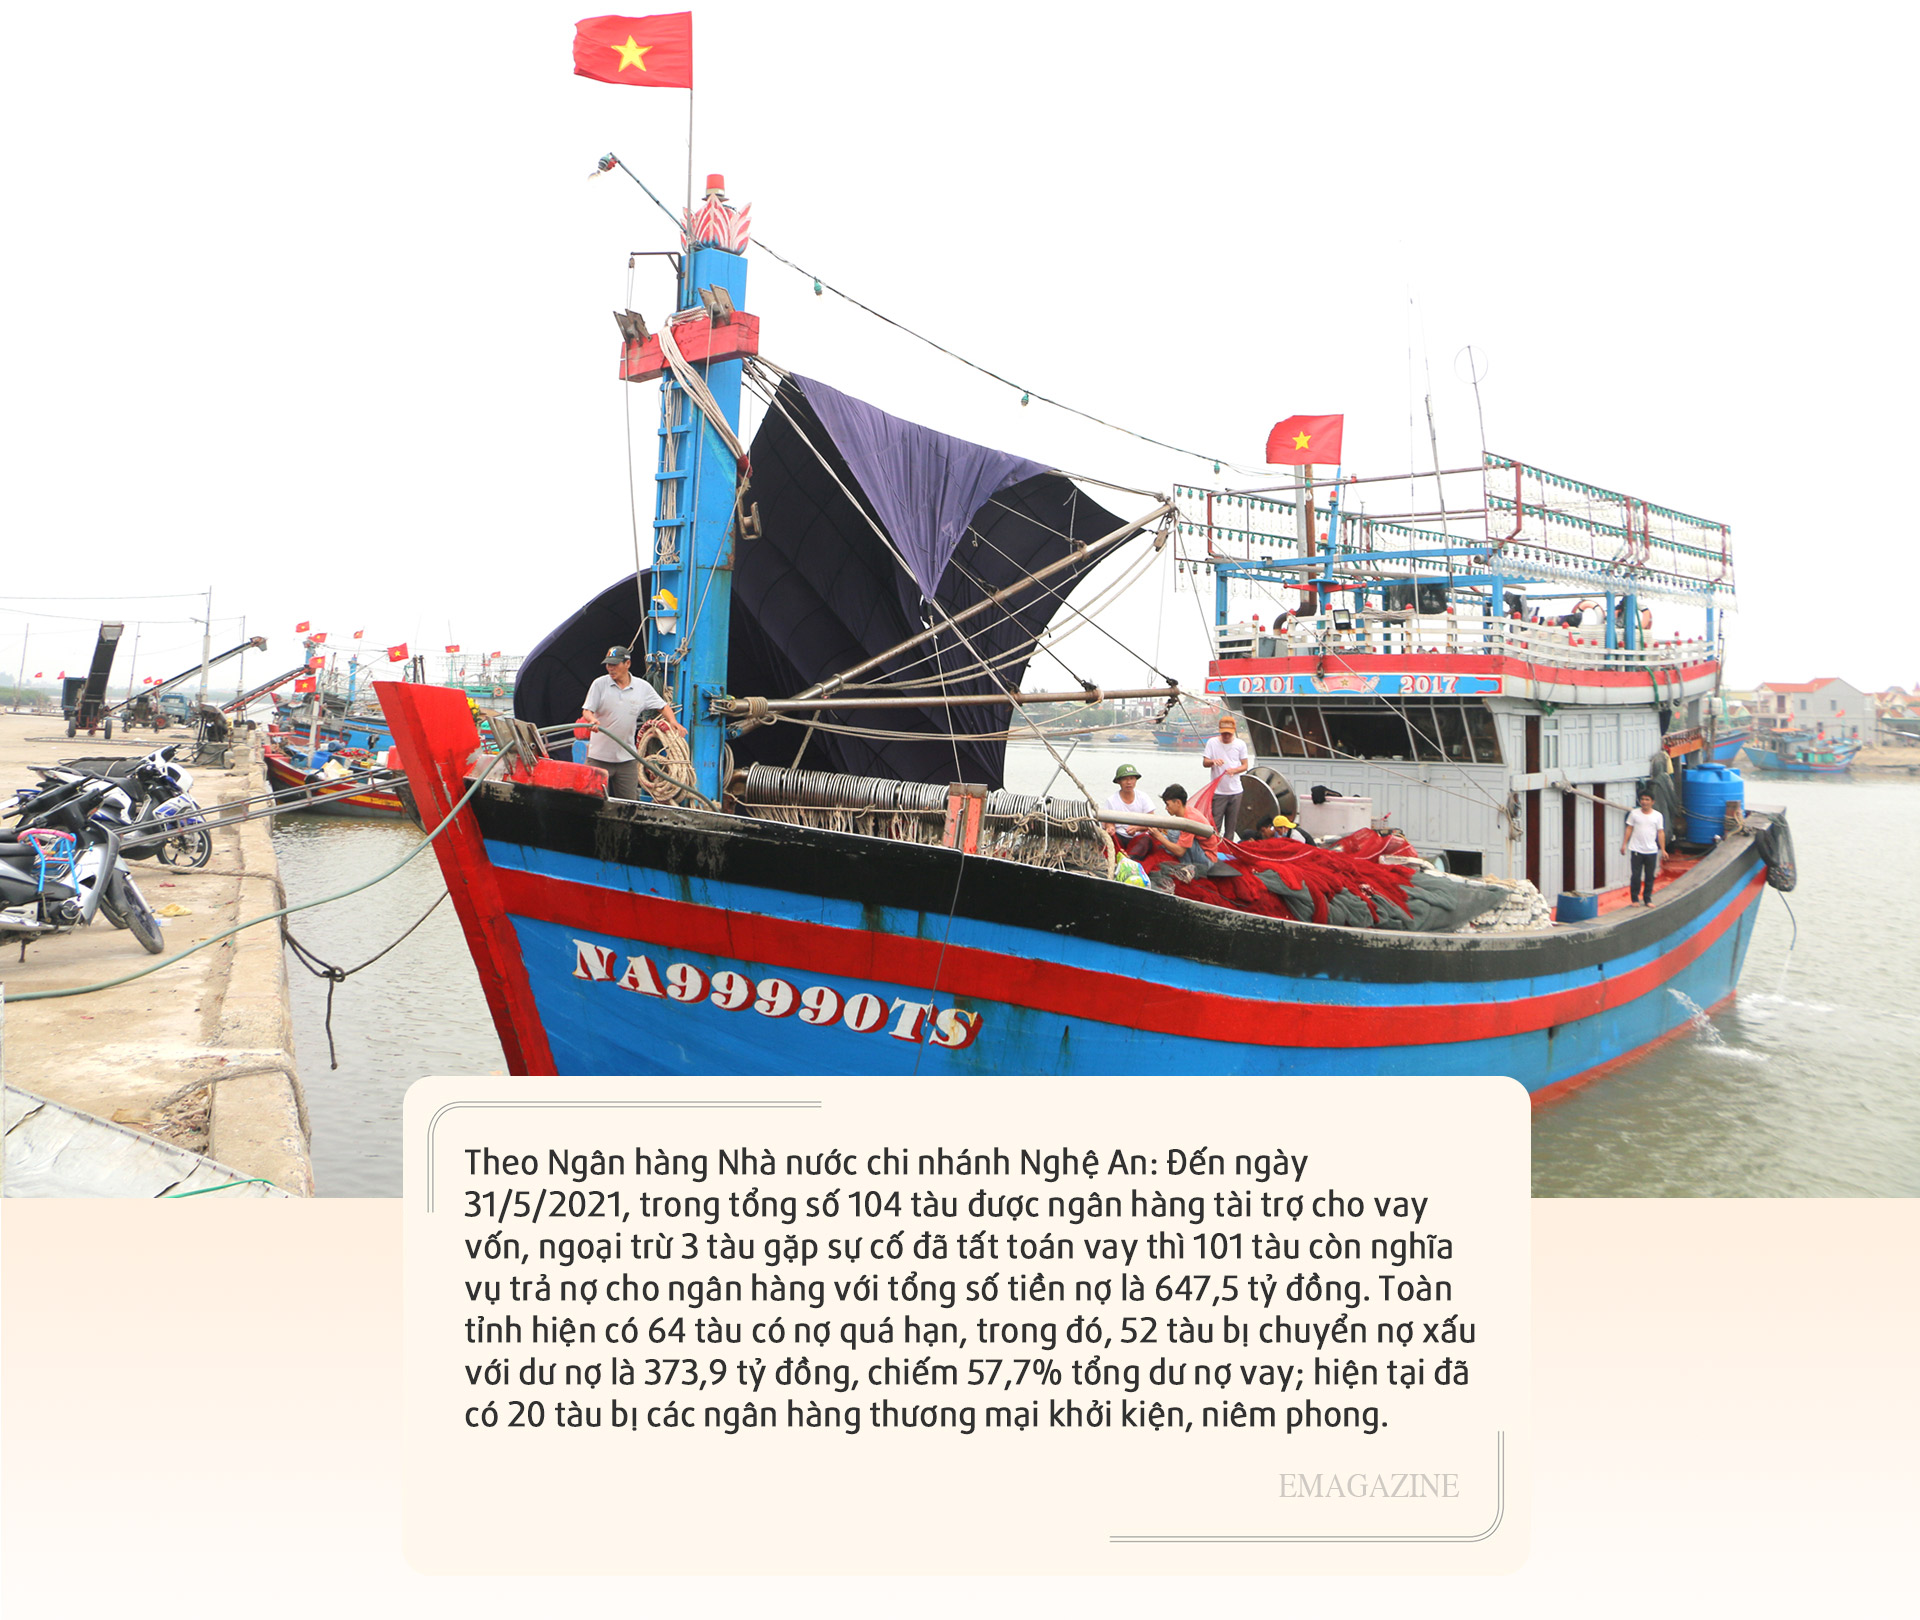 Mặc dù khó khăn nhưng ngư dân Quỳnh Long (Quỳnh Lưu) vẫn kiên trì vươn khơi, bám biển. Ảnh: Nguyễn Hải